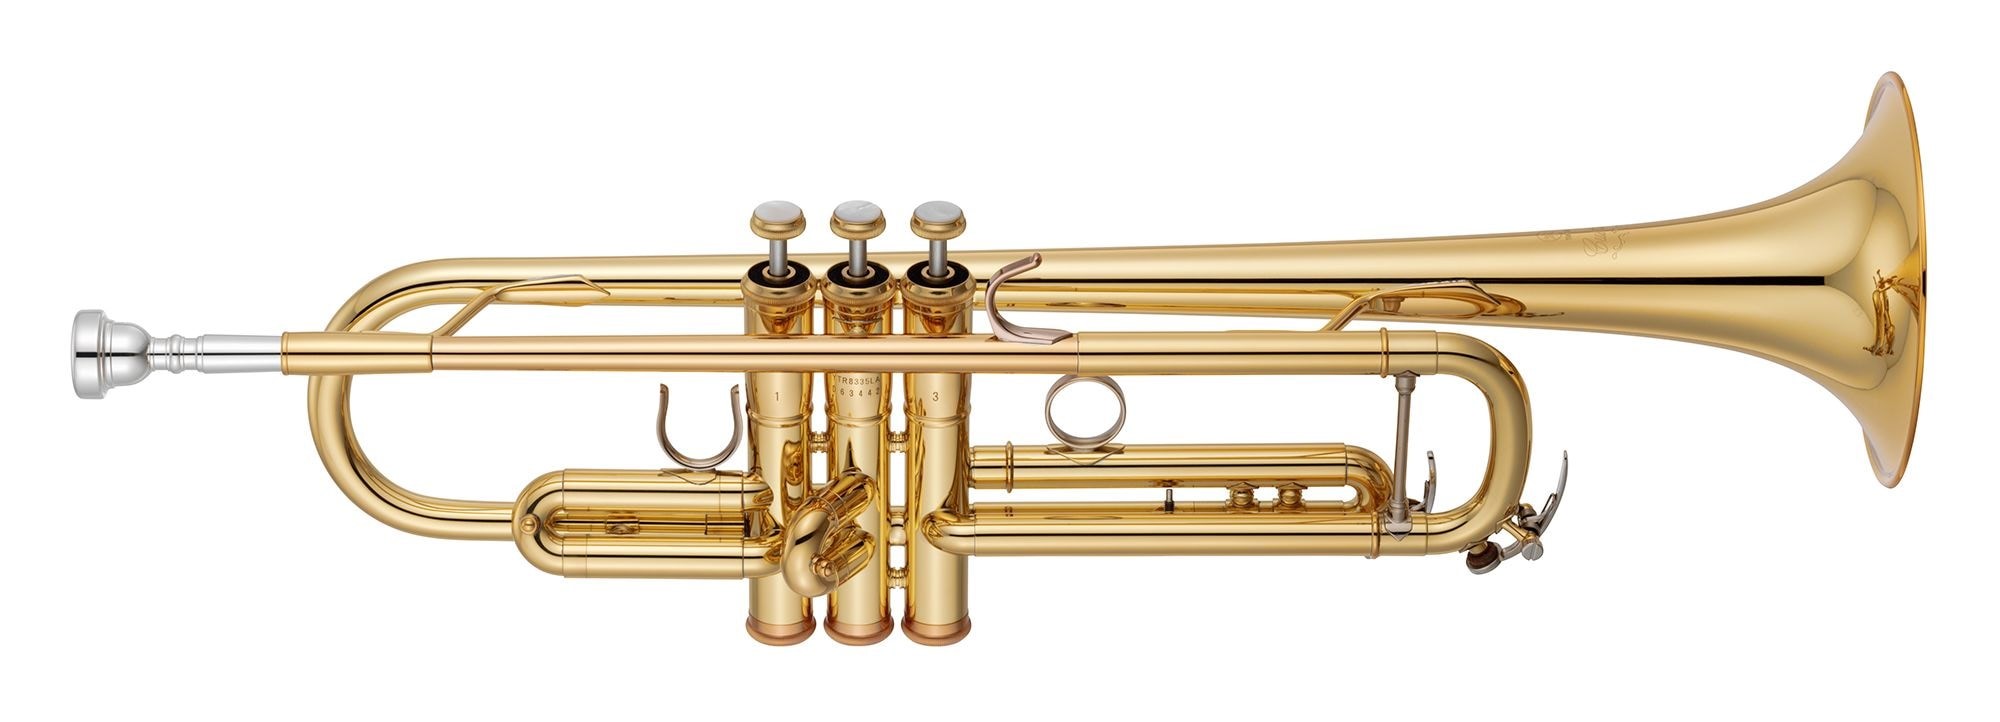 A shiny brass trumpet.